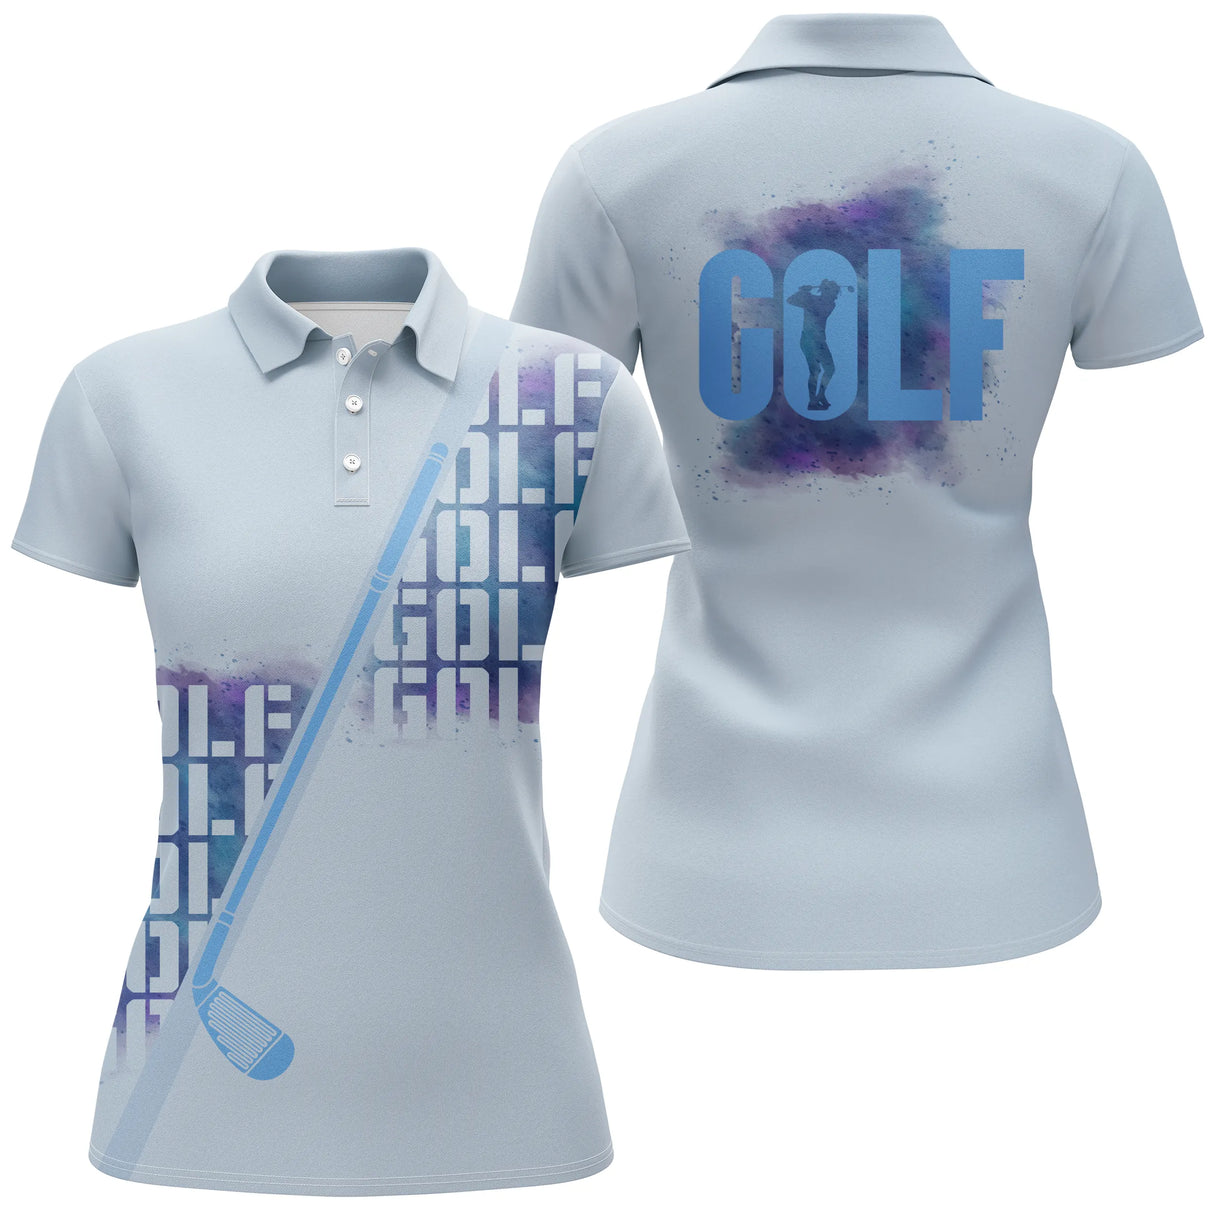 Chiptshirts - Polo de Golf Bleu, Idée Cadeau Original Pour Fan De Golf, Polo de Sport Homme Femme, Golfeur, Golfeuse - CTS25052221